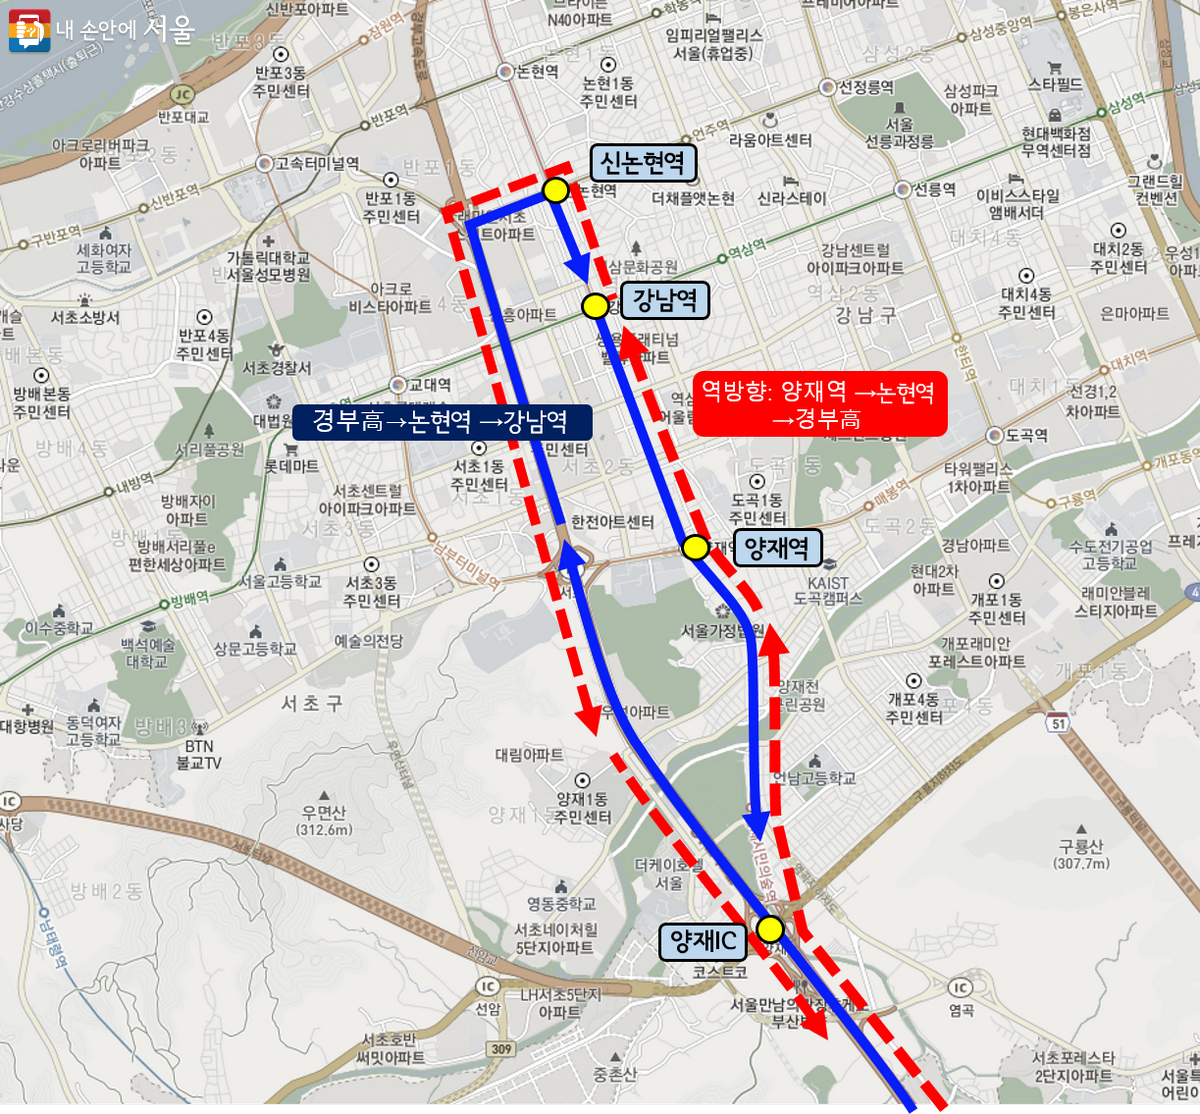 기존 광역버스 노선(파란점선)과 달리 서울01번은 혼잡구간을 피해 양재IC에서 반시계방향(적색점선)으로 운행한다. ©서울시